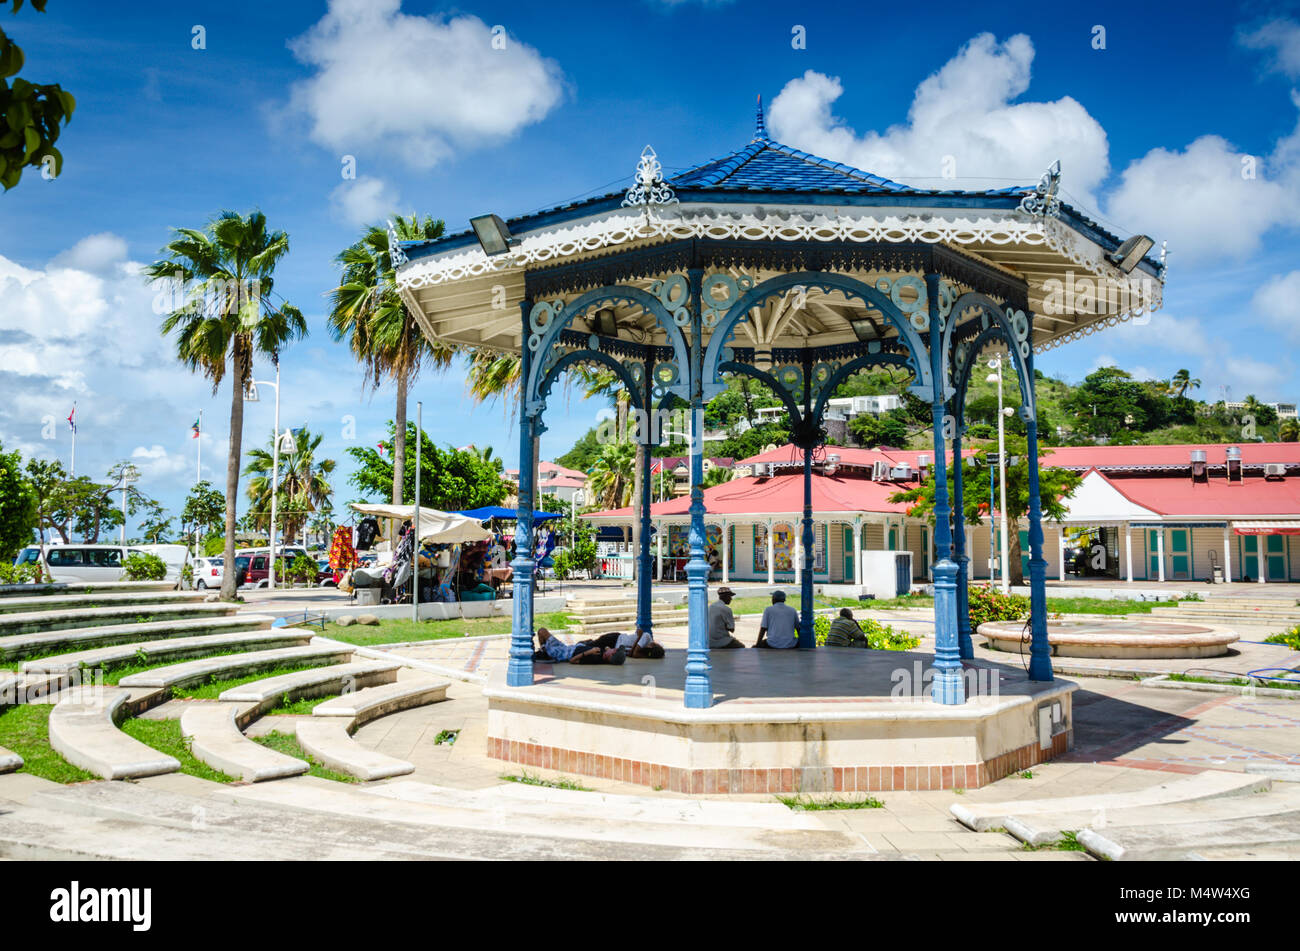 Gazebo storico, adornata con pan di zenzero dettaglio, fornisce ombra benvenuto all'aria aperta Marigot Market in San Martin/Saint Maarten. Foto Stock